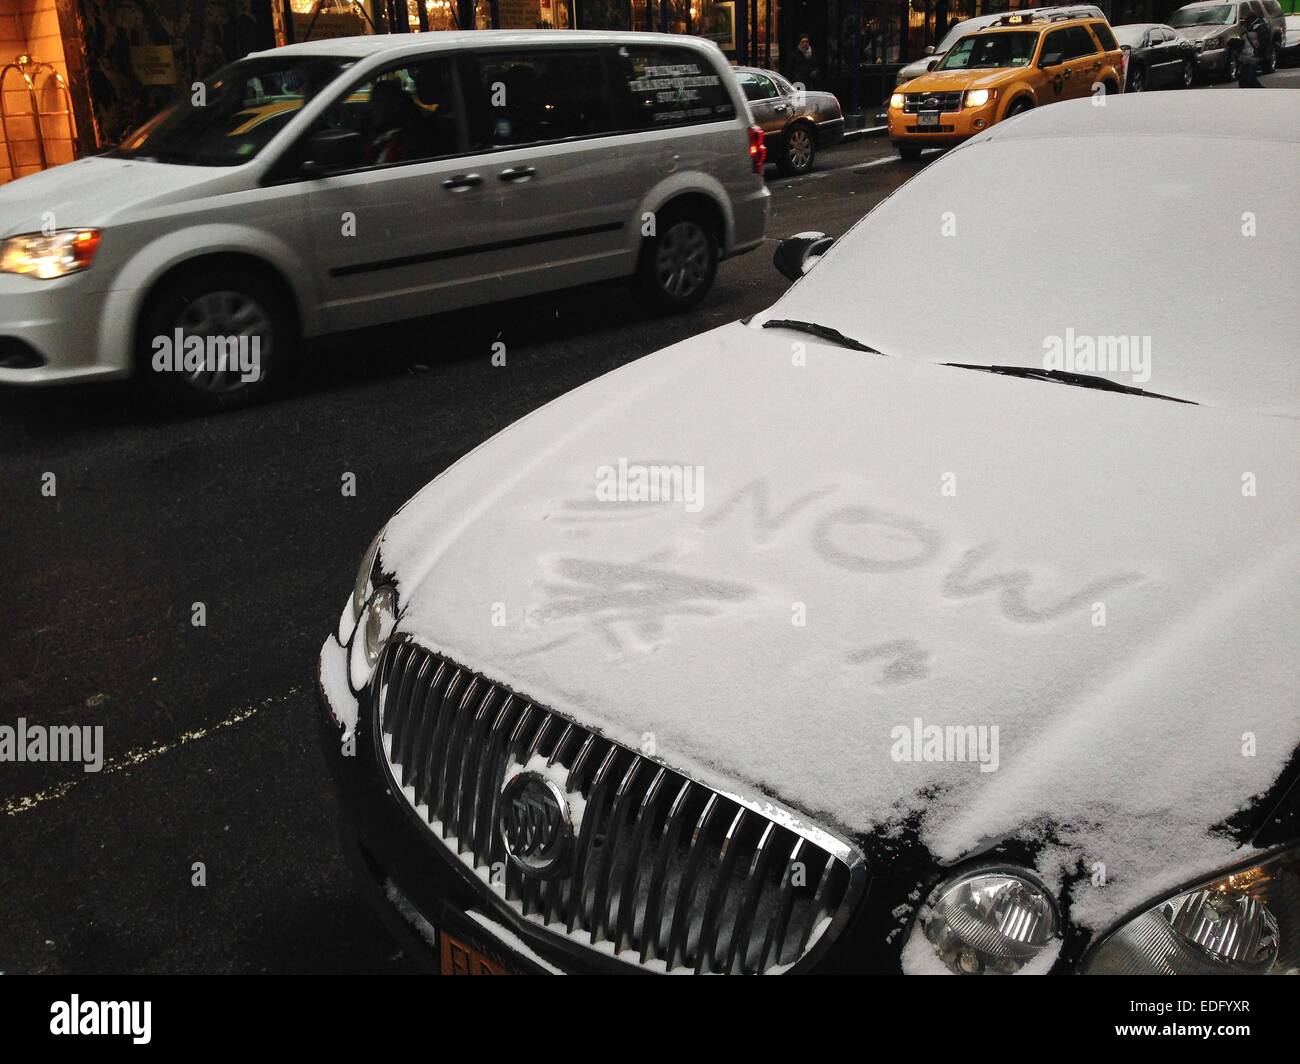 New York, USA. 6 janvier, 2015. Un véhicule passe par un autre recouvert de neige durant une chute de neige à New York, États-Unis, 6 janvier 2015. Credit : Niu Xiaolei/Xinhua/Alamy Live News Banque D'Images